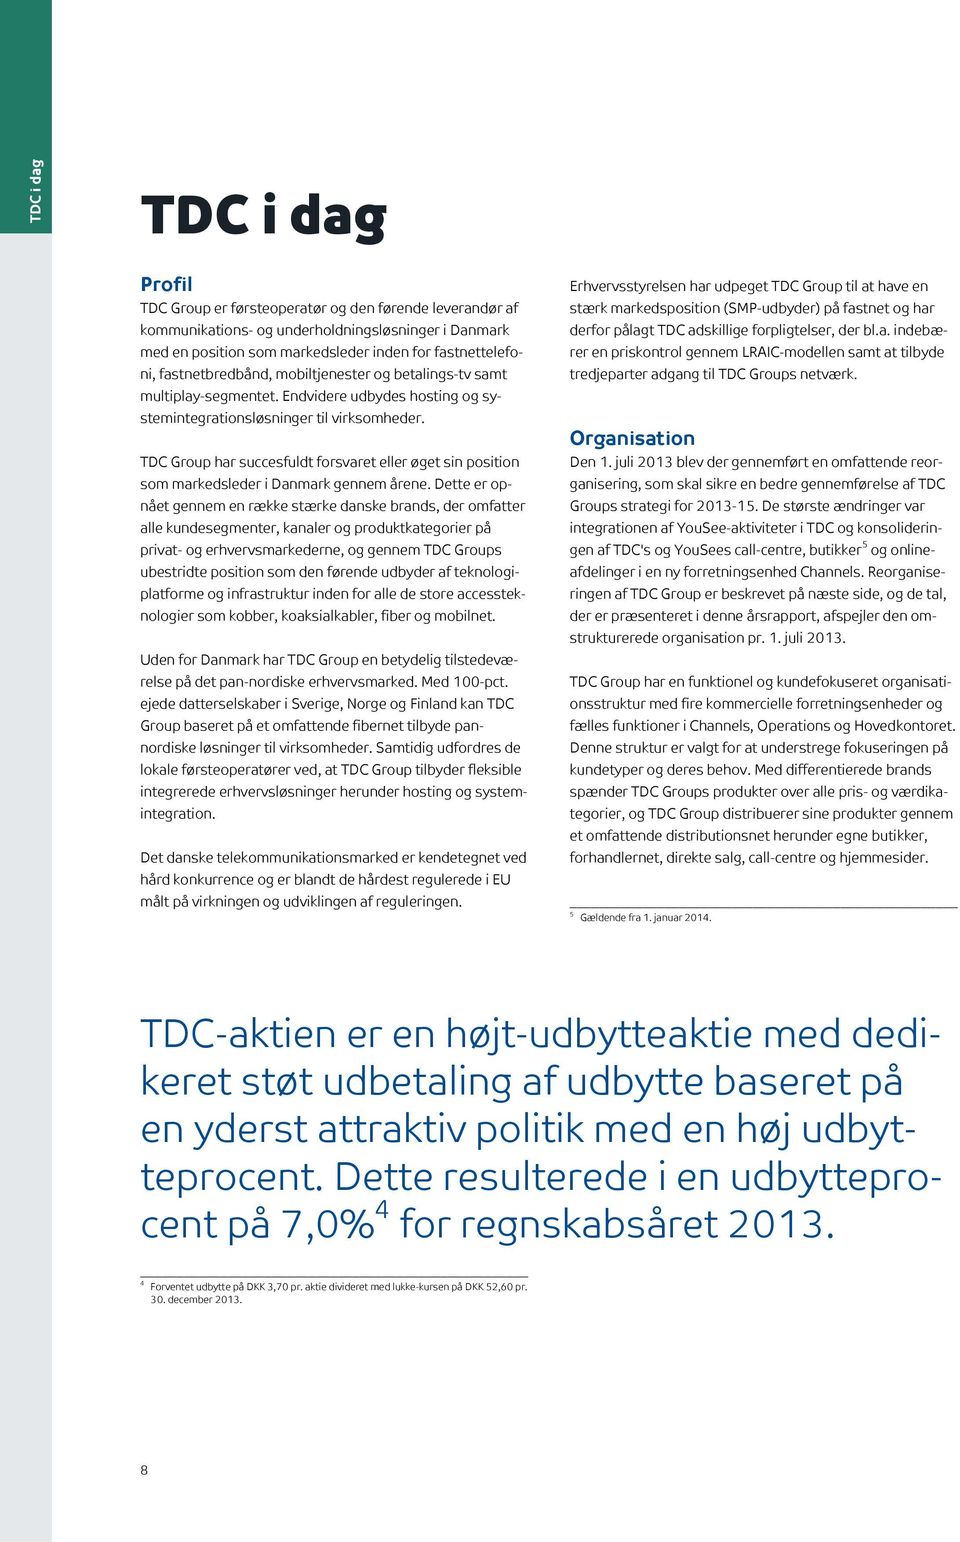 TDC Group har succesfuldt forsvaret eller øget sin position som markedsleder i Danmark gennem årene.